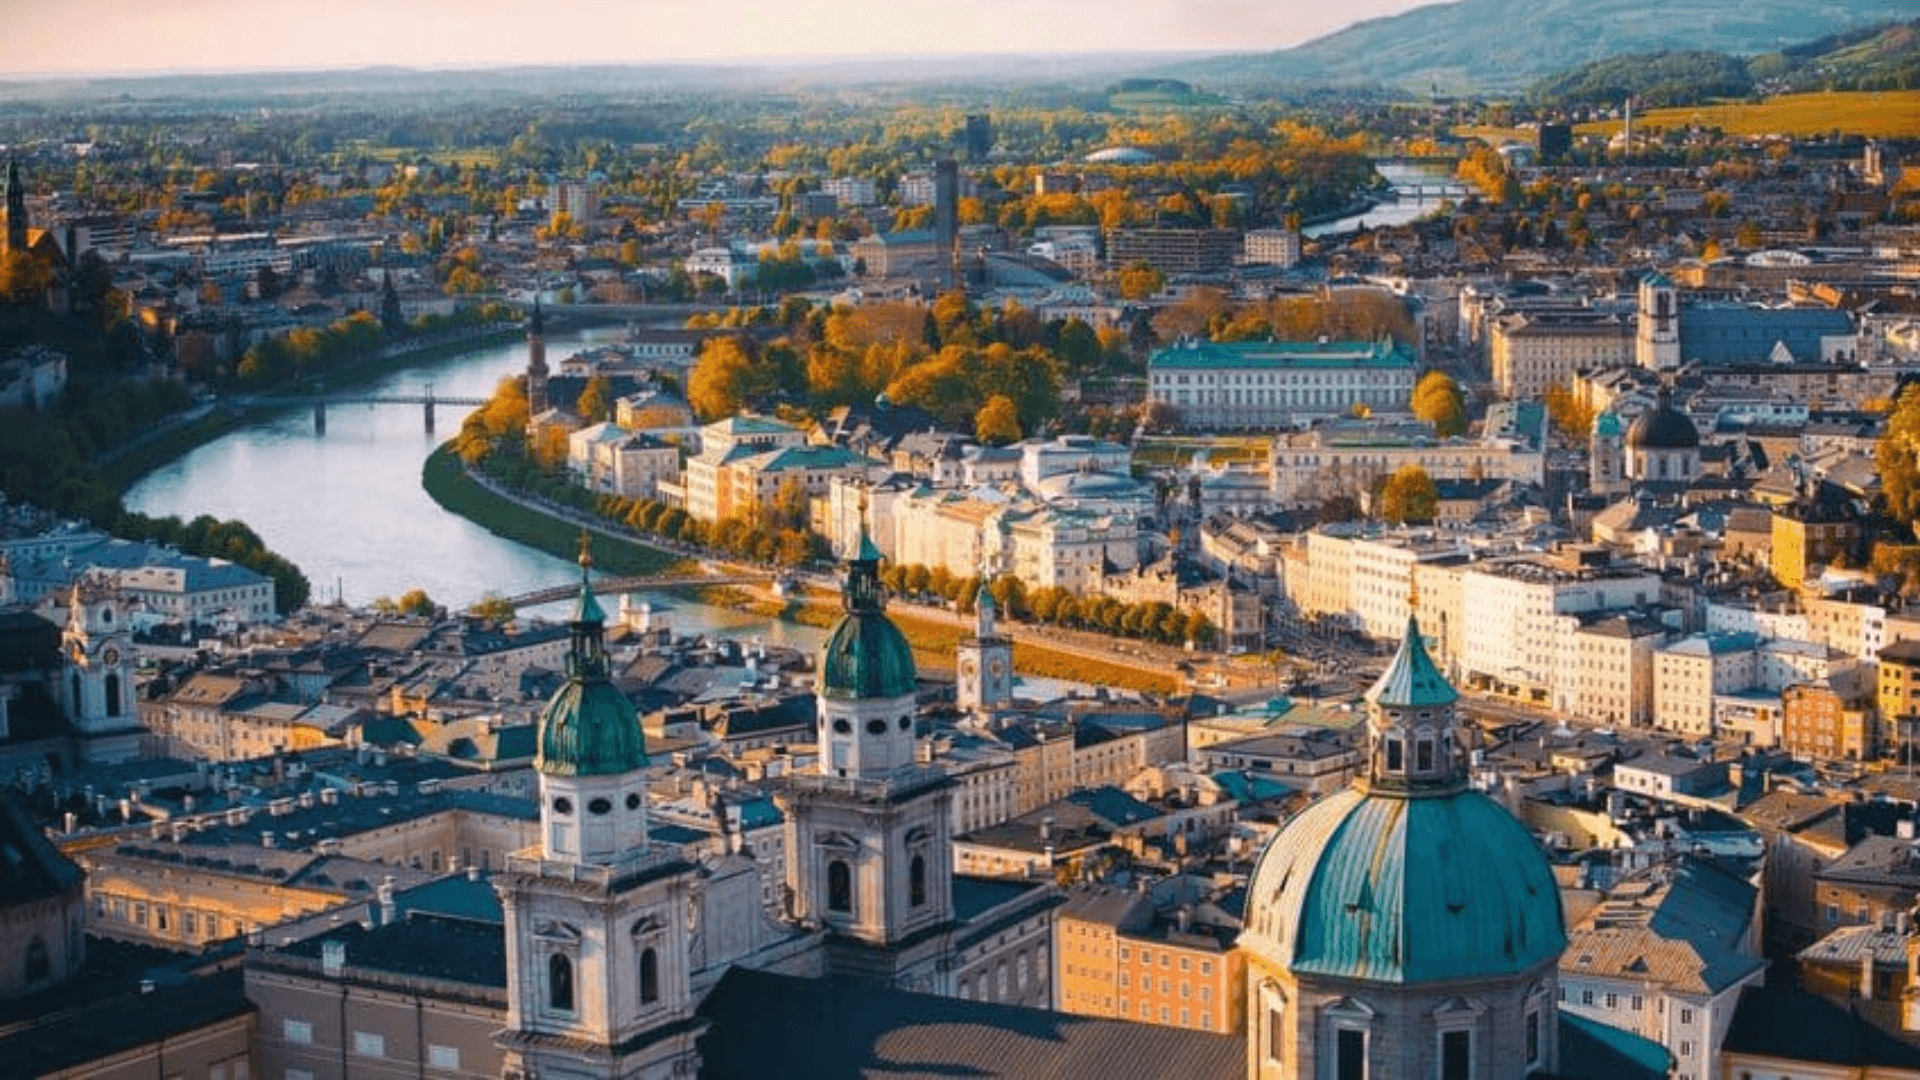 Visitez Vienne, la magnifique capitale de l'Autriche